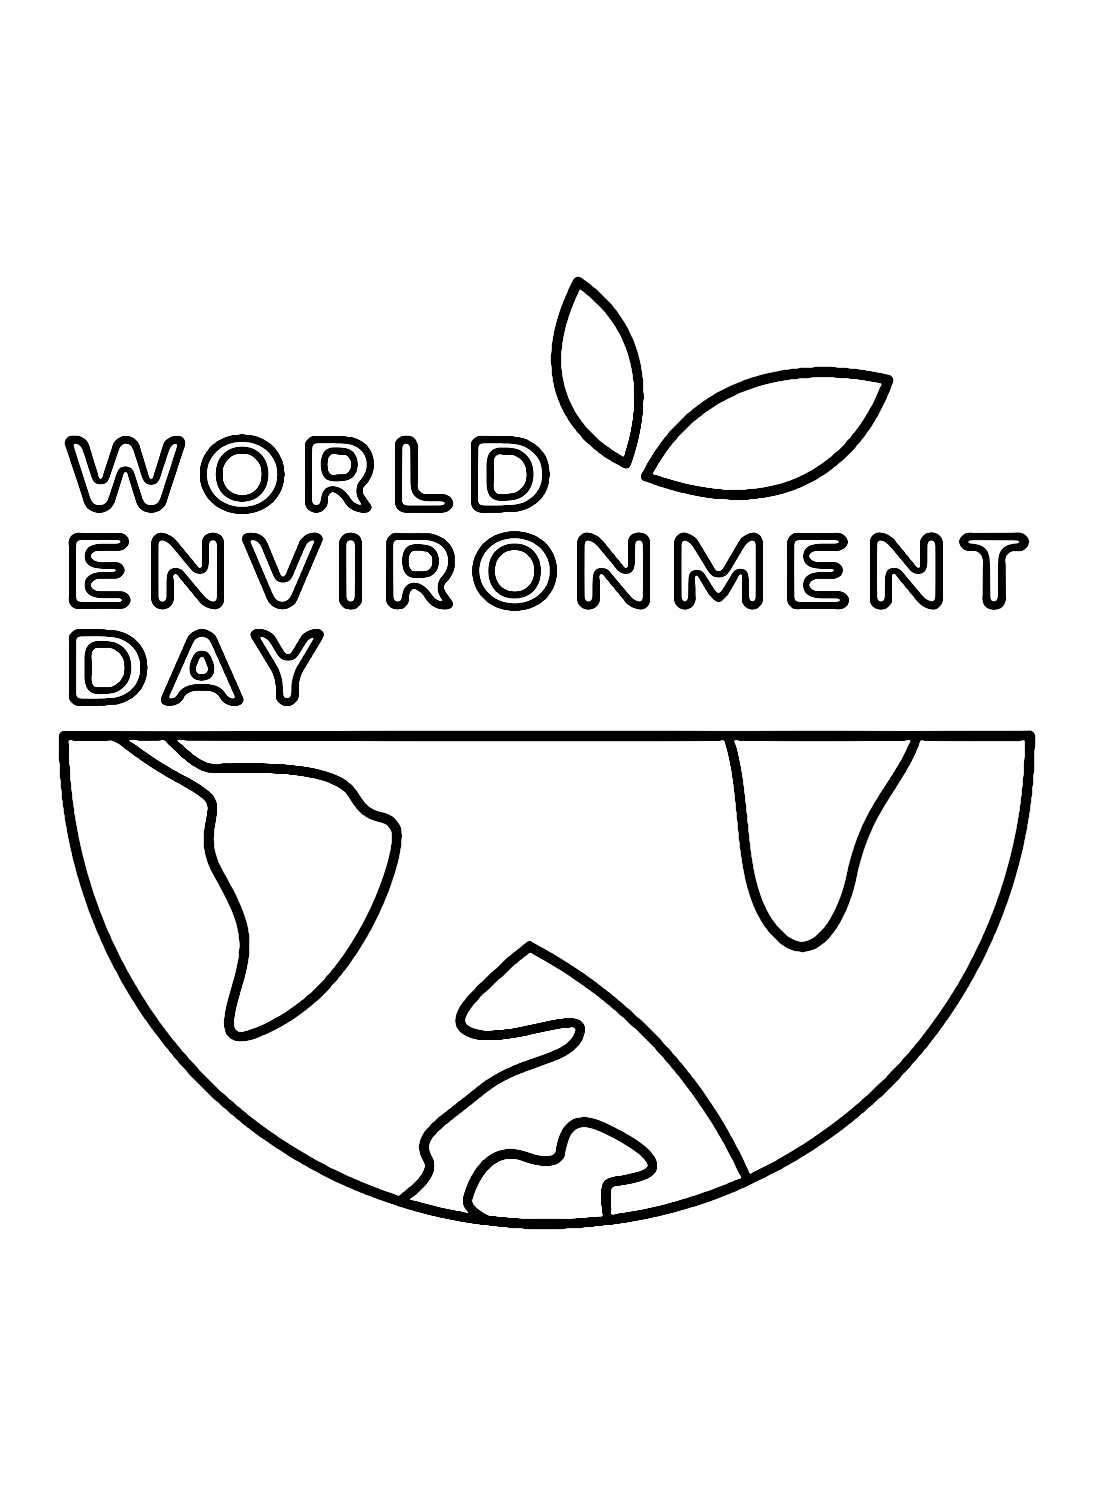 Dia Mundial do Meio Ambiente Gratuito from Dia Mundial do Meio Ambiente